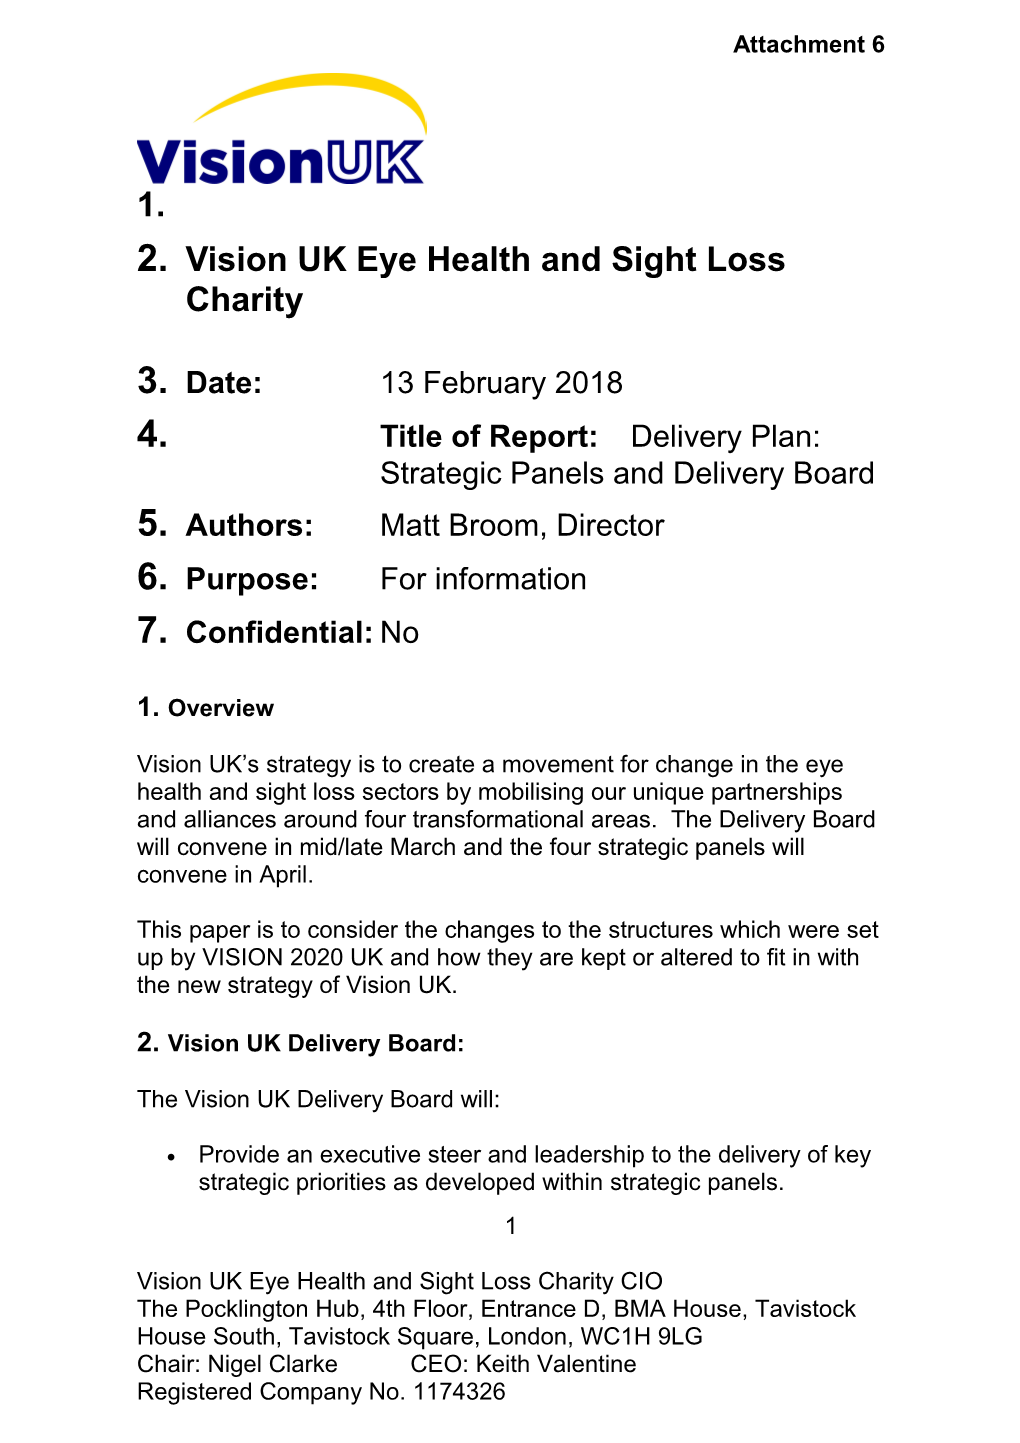 Vision UK Eye Health and Sight Loss Charity